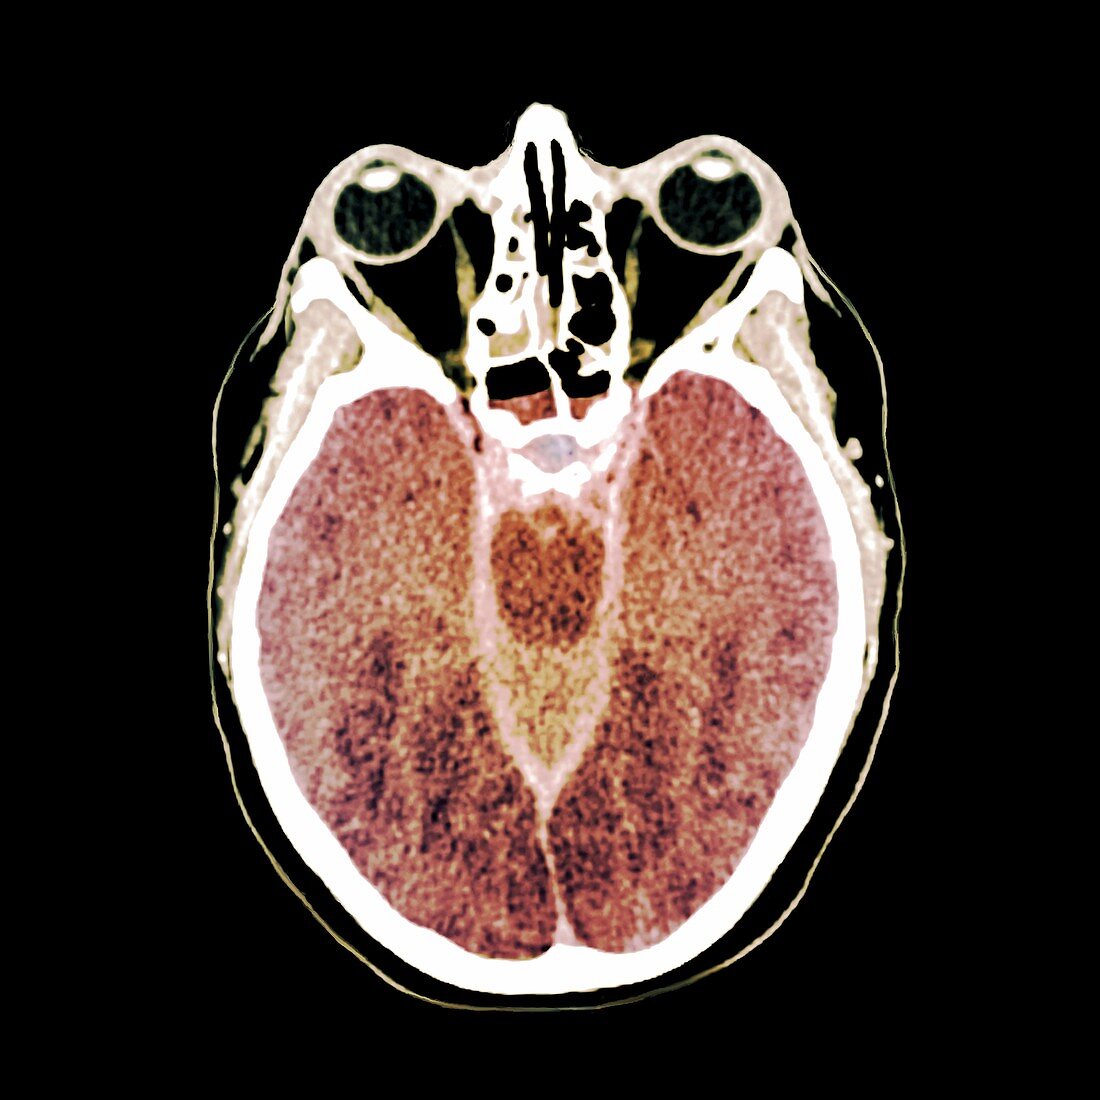 Brain death following cardiac arrest,CT